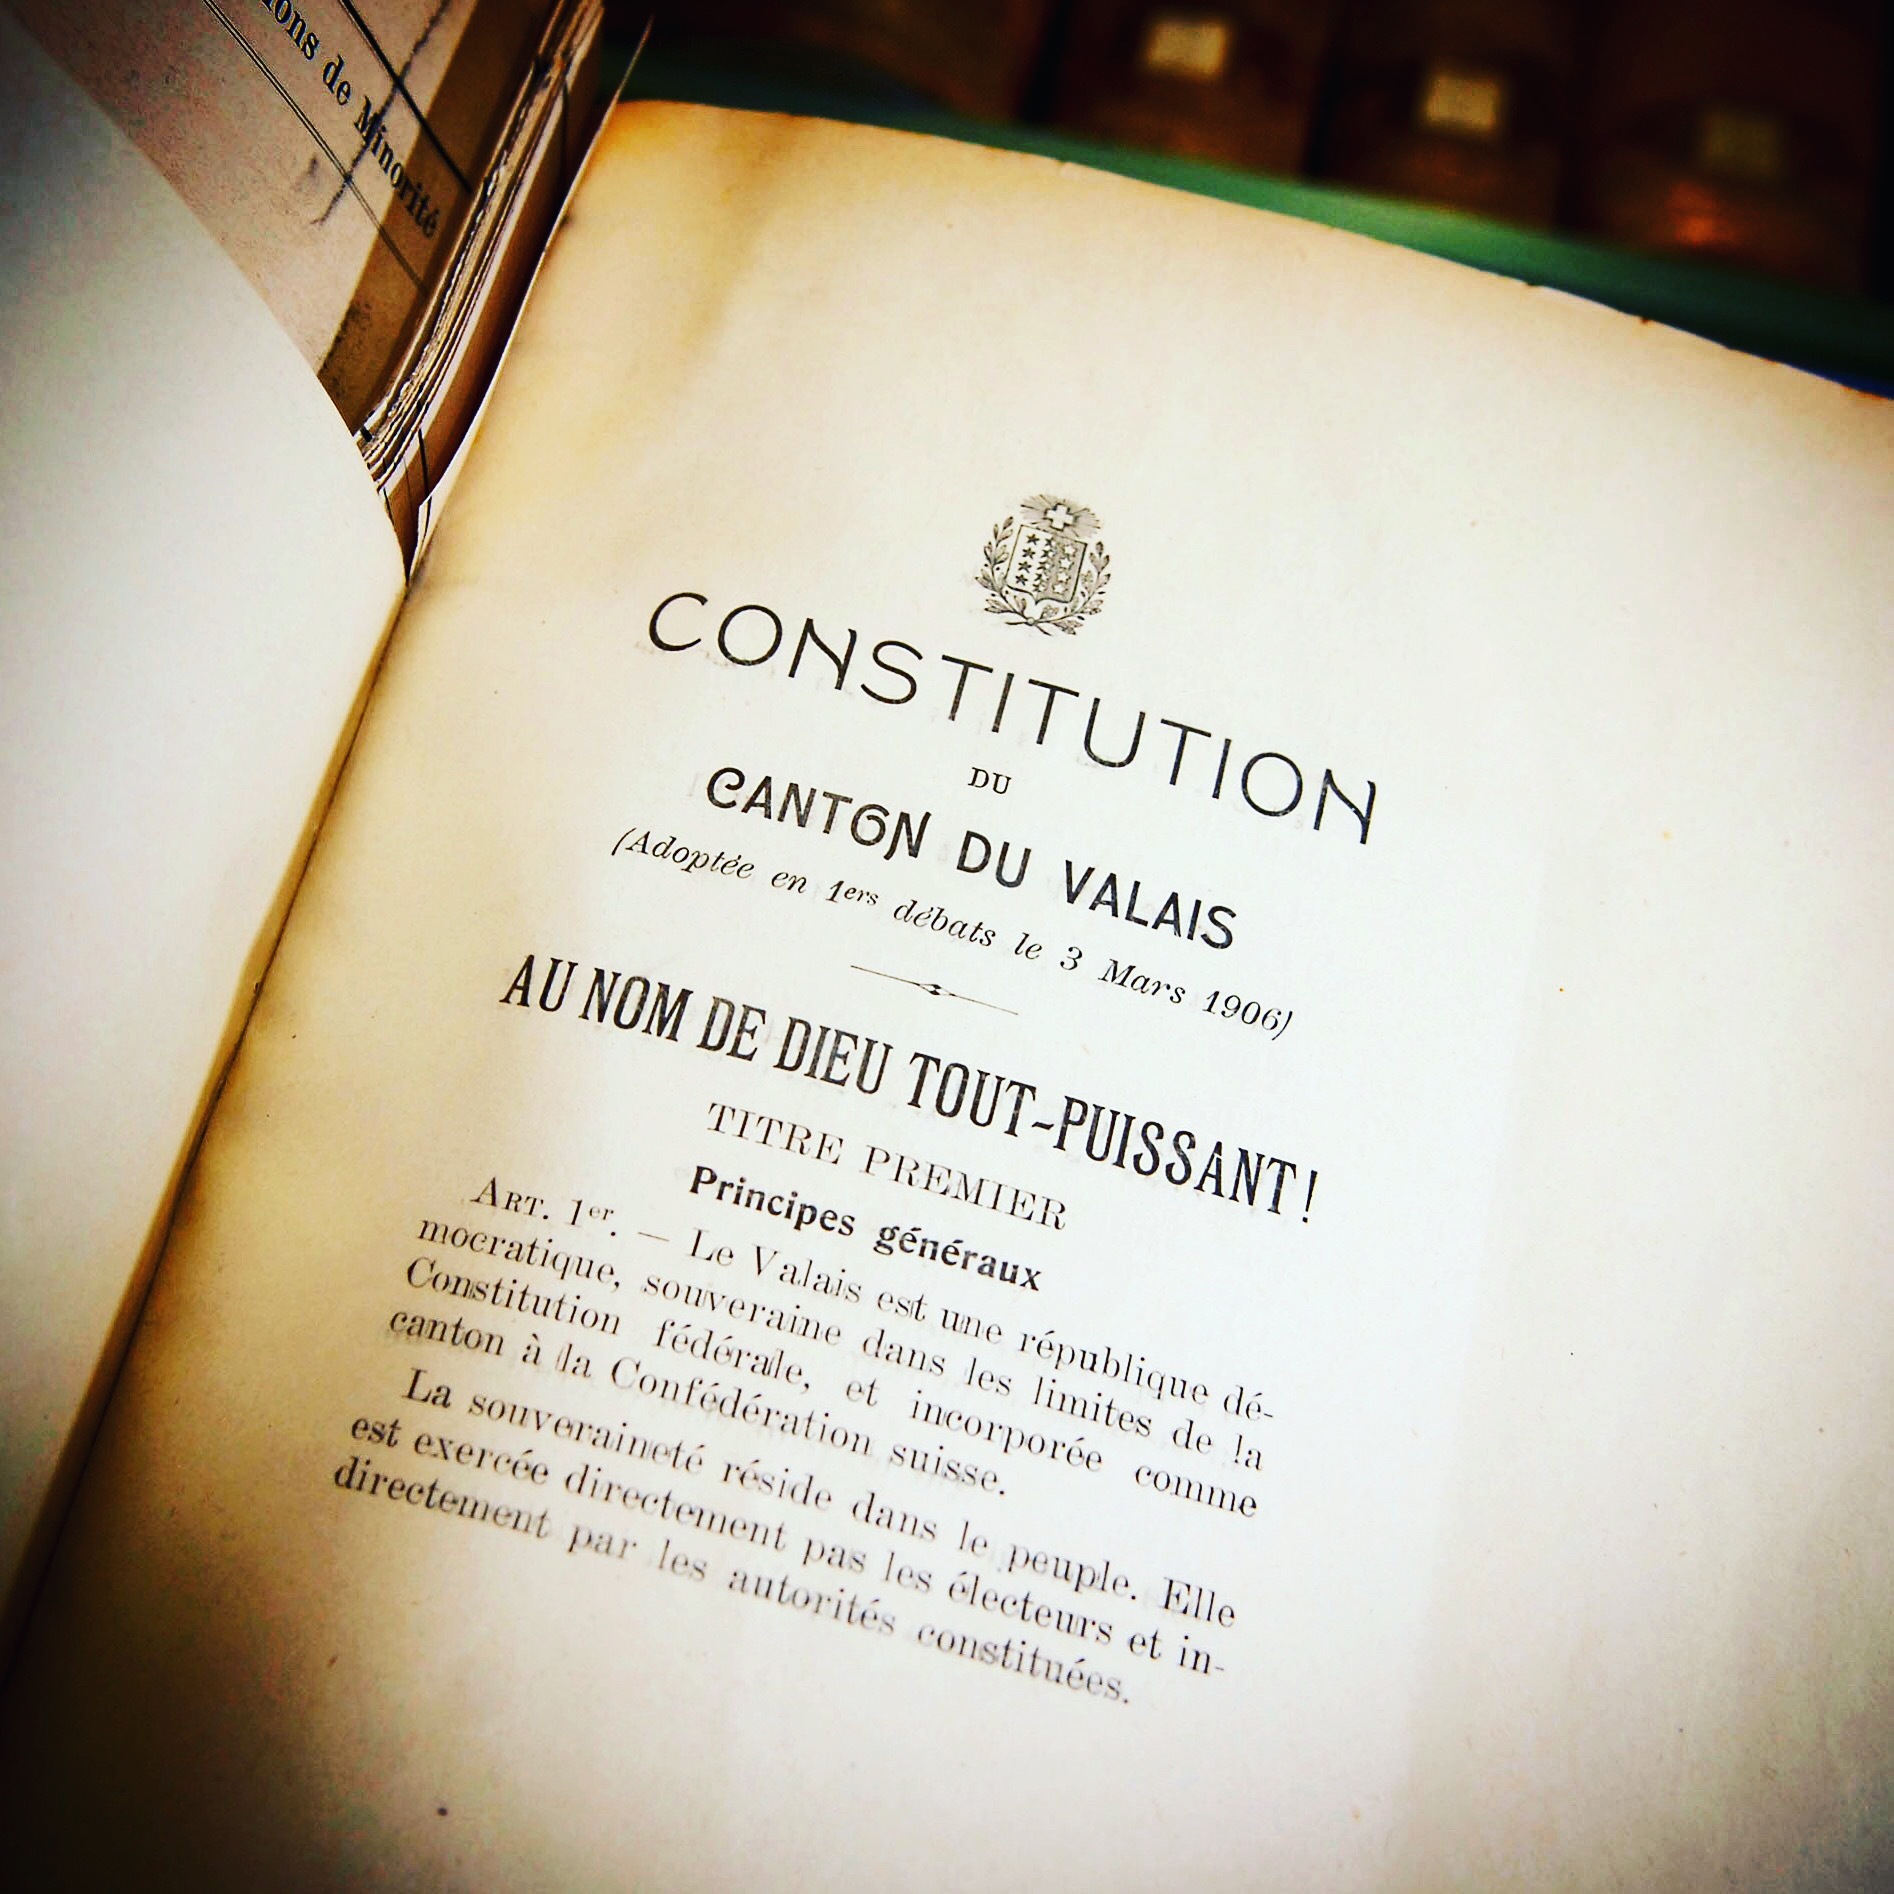 Connaissez-vous bien la Constitution valaisanne? Participez à notre quiz!